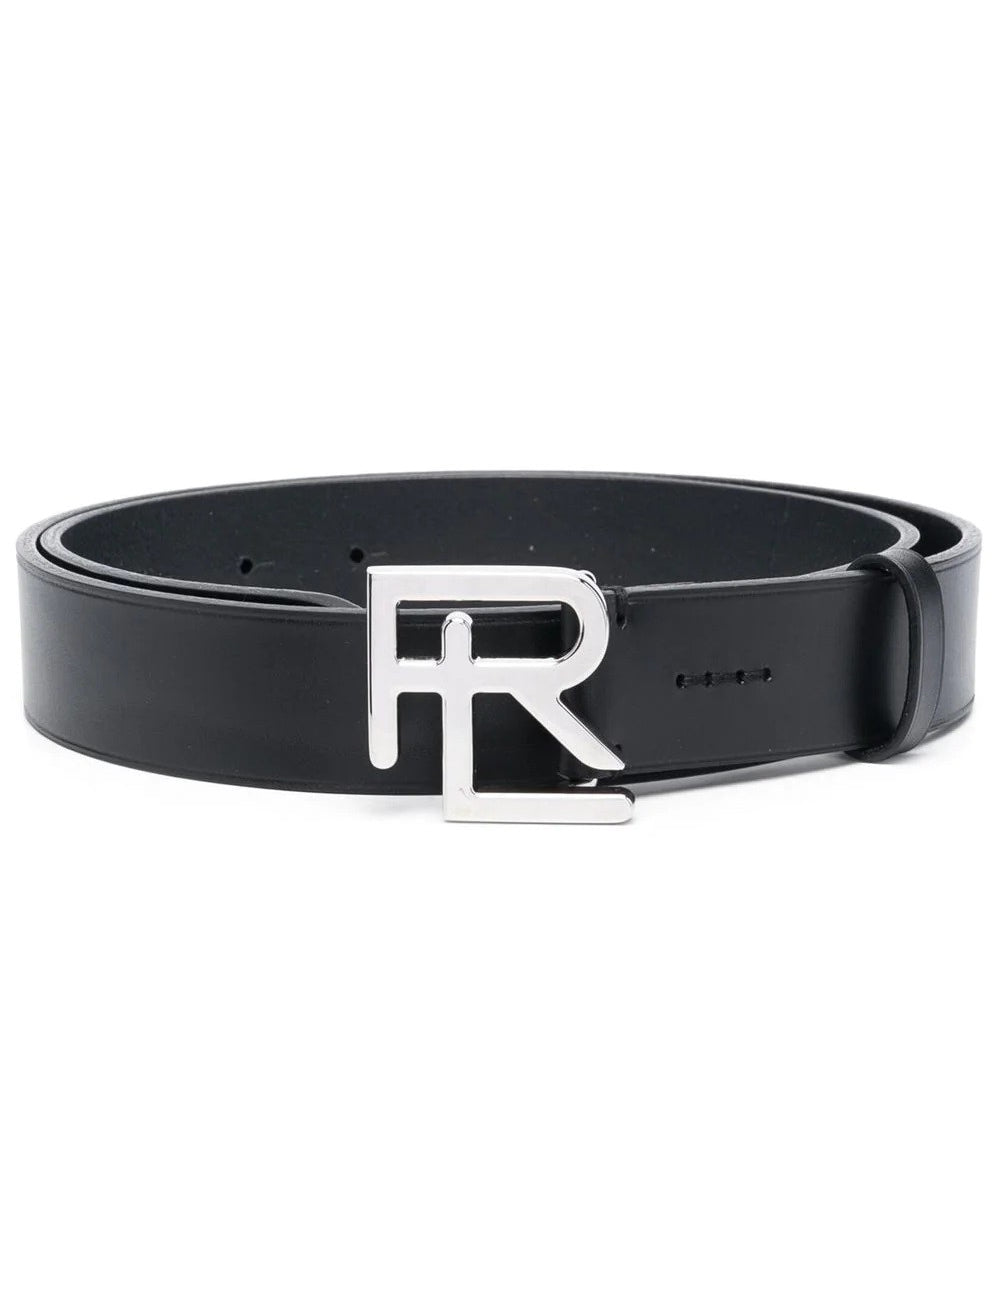 rl-logo-smooth-leather-belt_b687dfd0-a3b7-4c3f-9435-837713dd619c.jpg